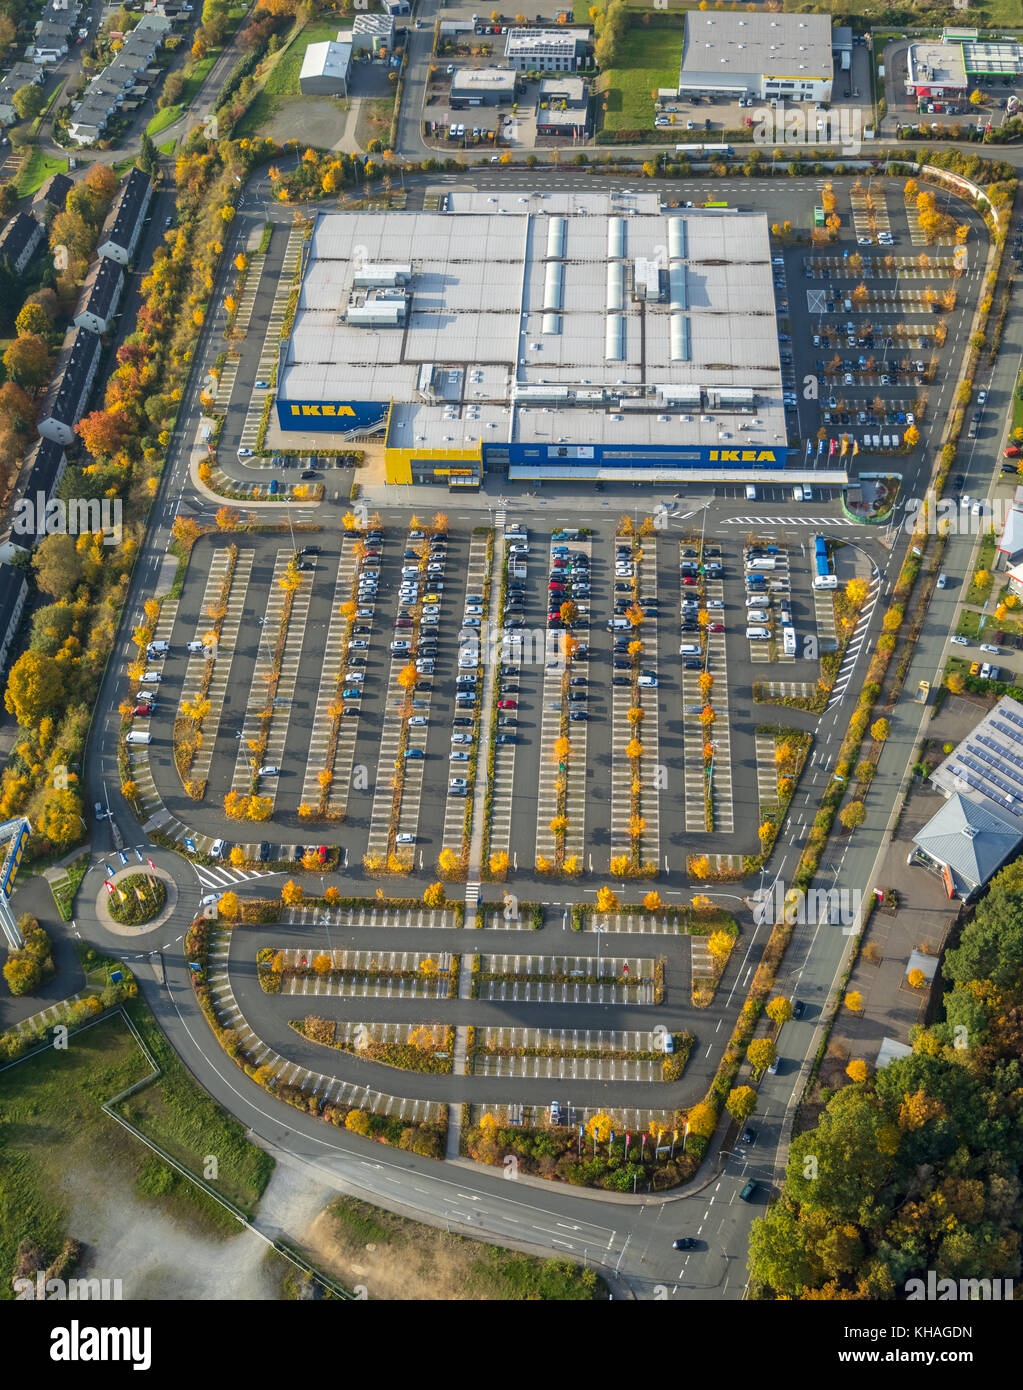 Samengroeiing Verwaand Aan Ikea parking hi-res stock photography and images - Alamy